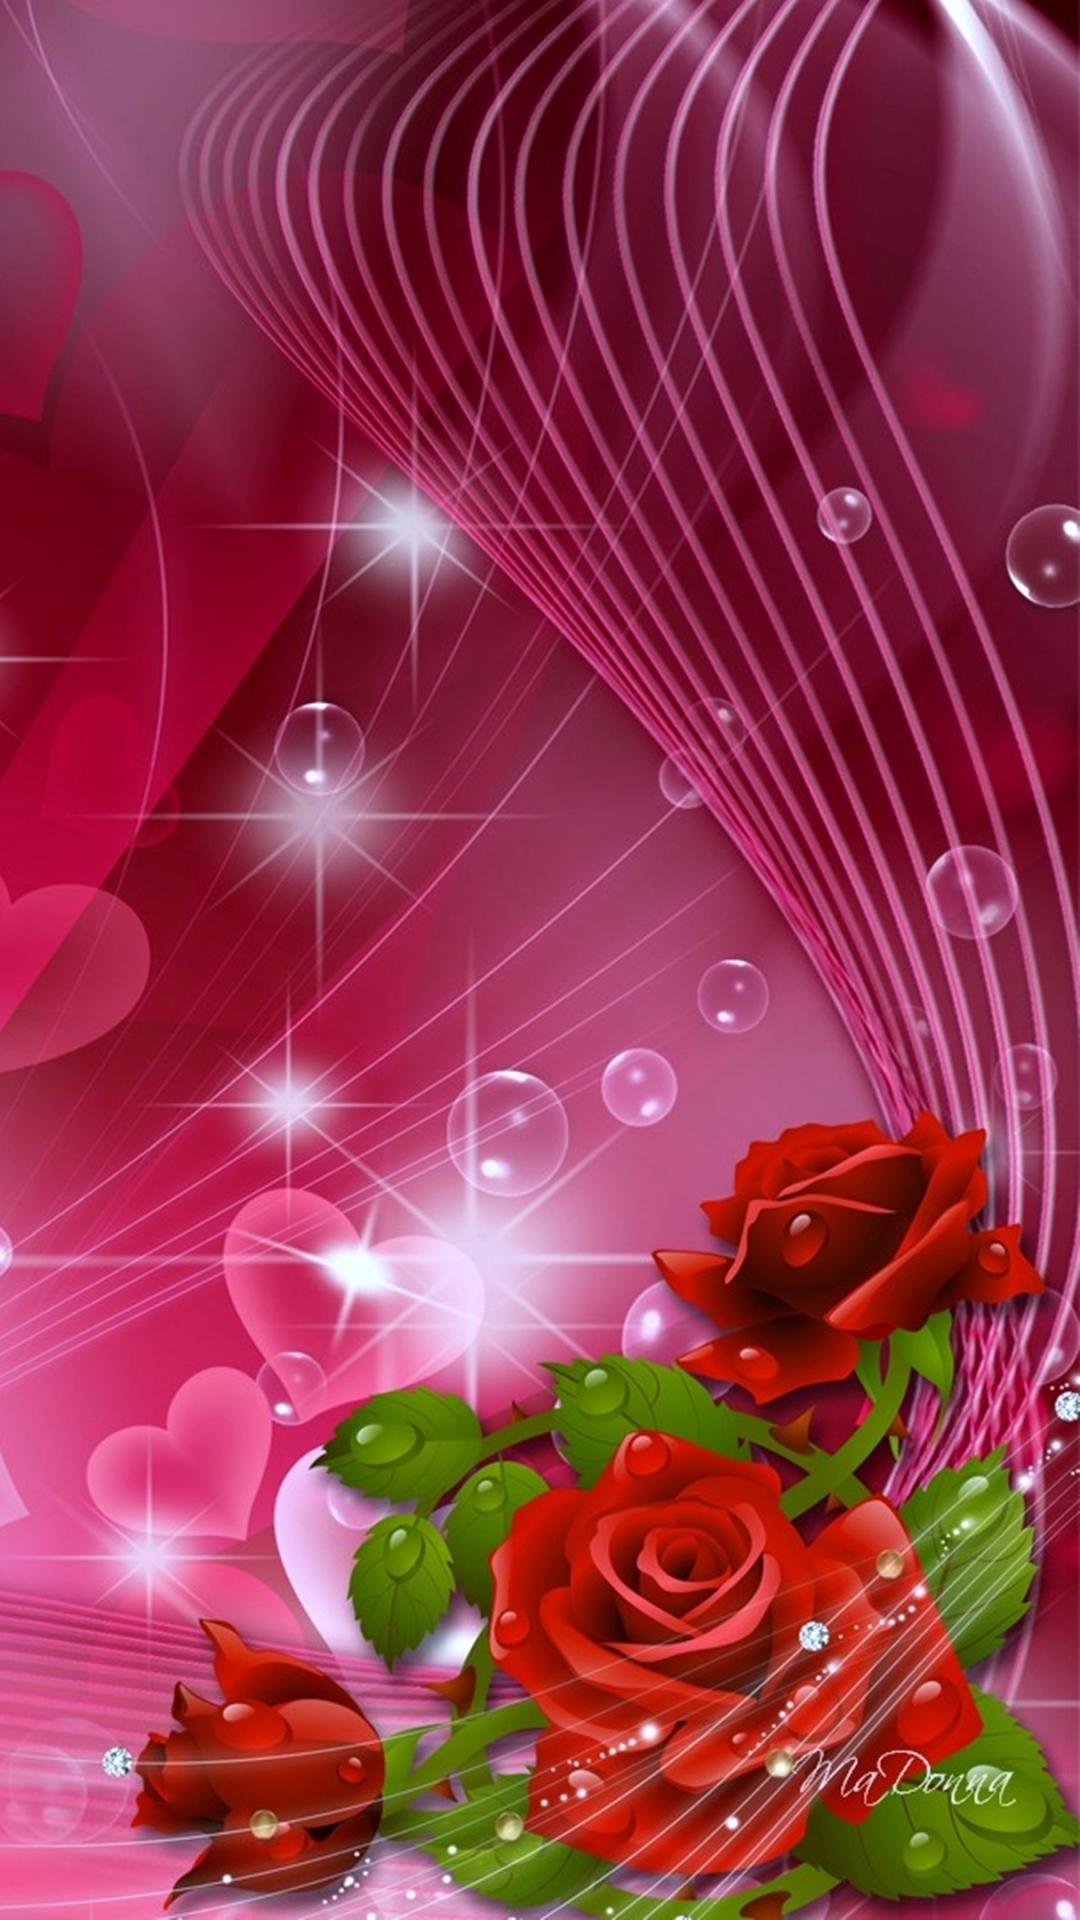 3d rose heart hd wallpaper for mobile